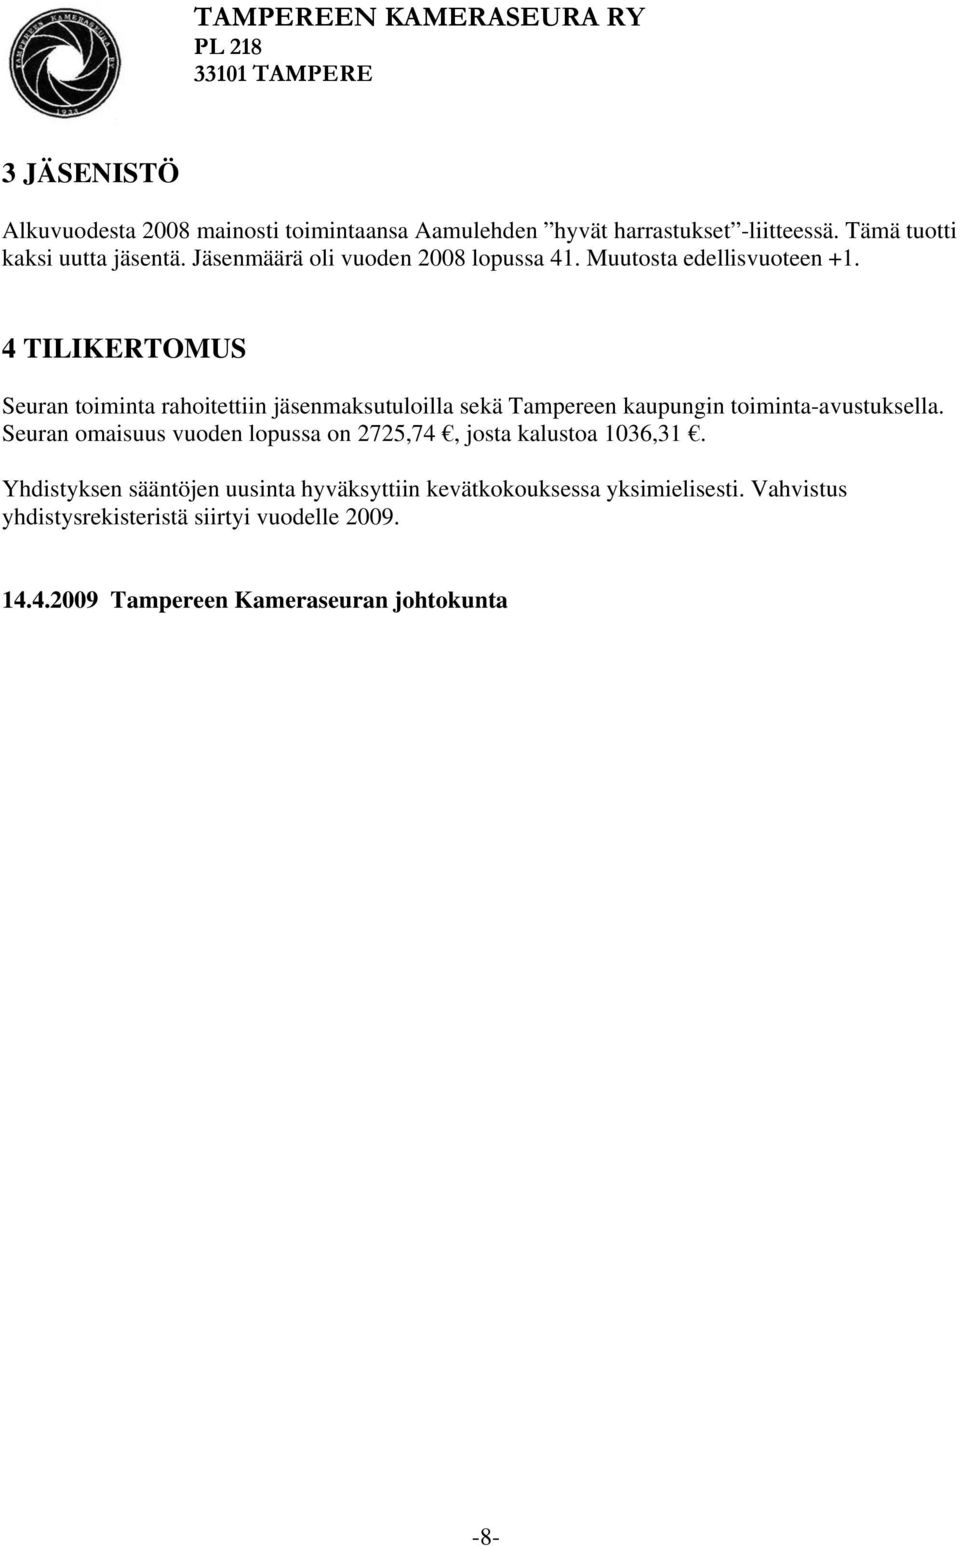 4 TILIKERTOMUS Seuran toiminta rahoitettiin jäsenmaksutuloilla sekä Tampereen kaupungin toiminta-avustuksella.